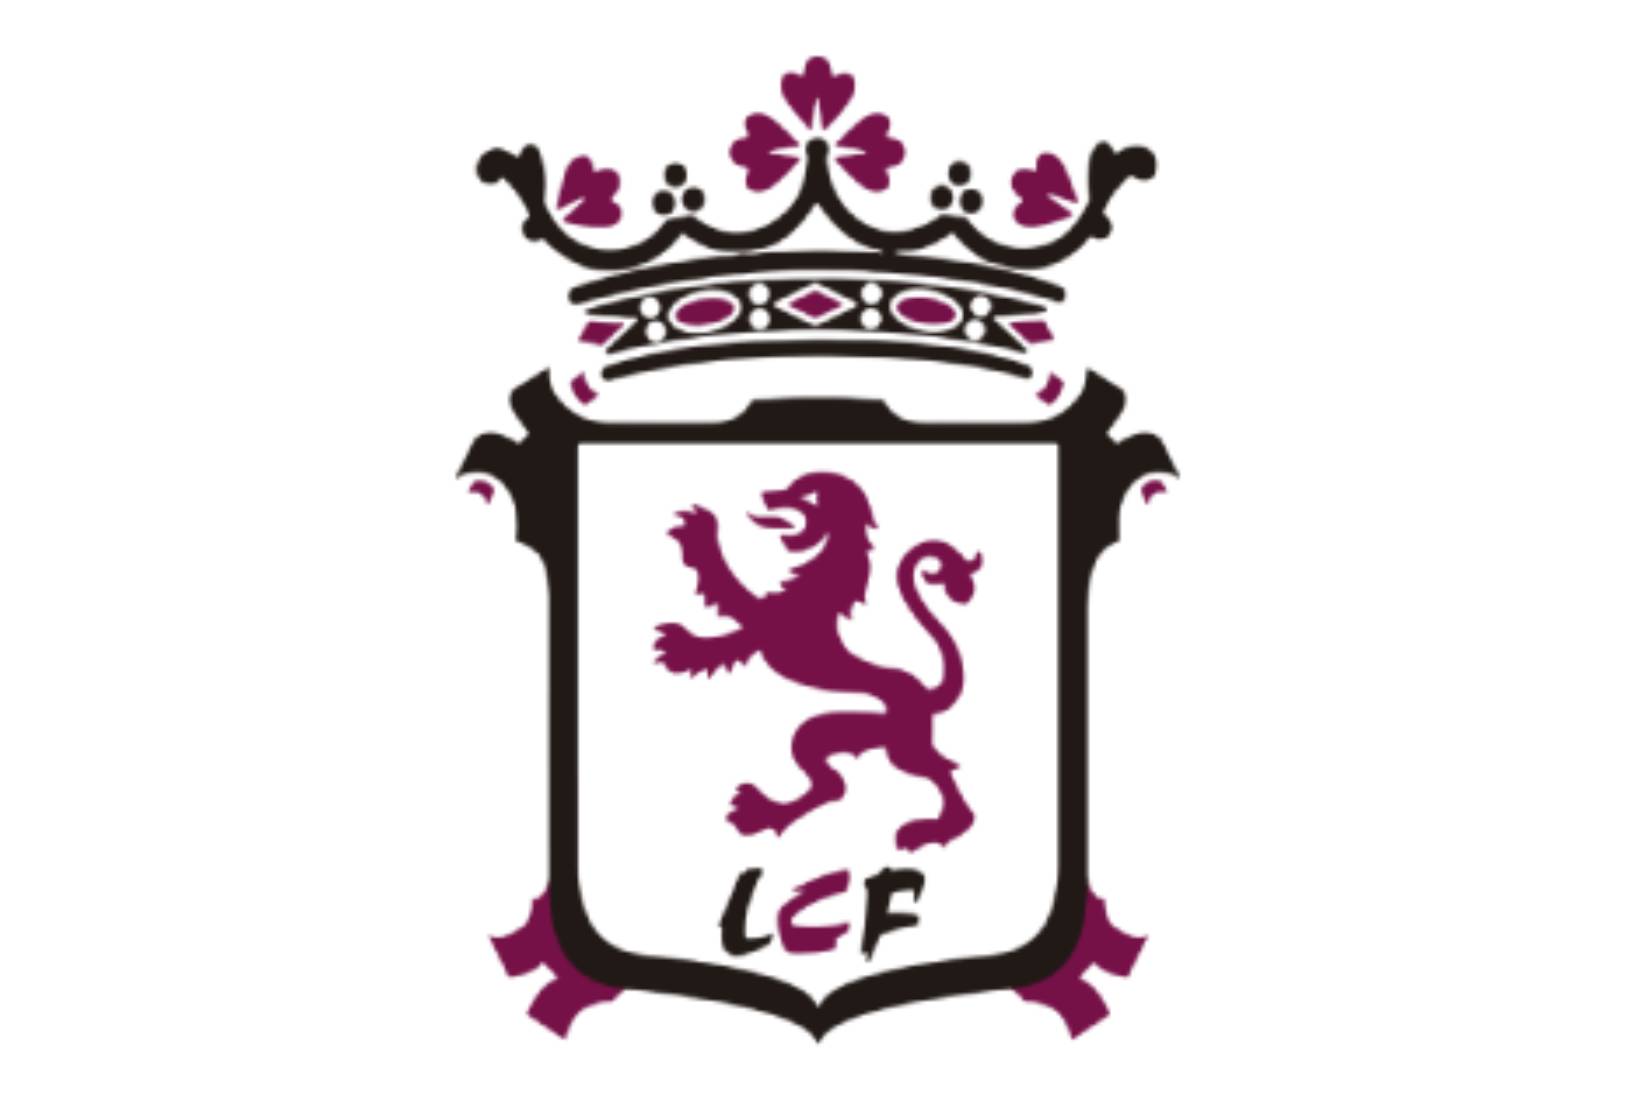 León Club de Fútbol - León Club de Fútbol